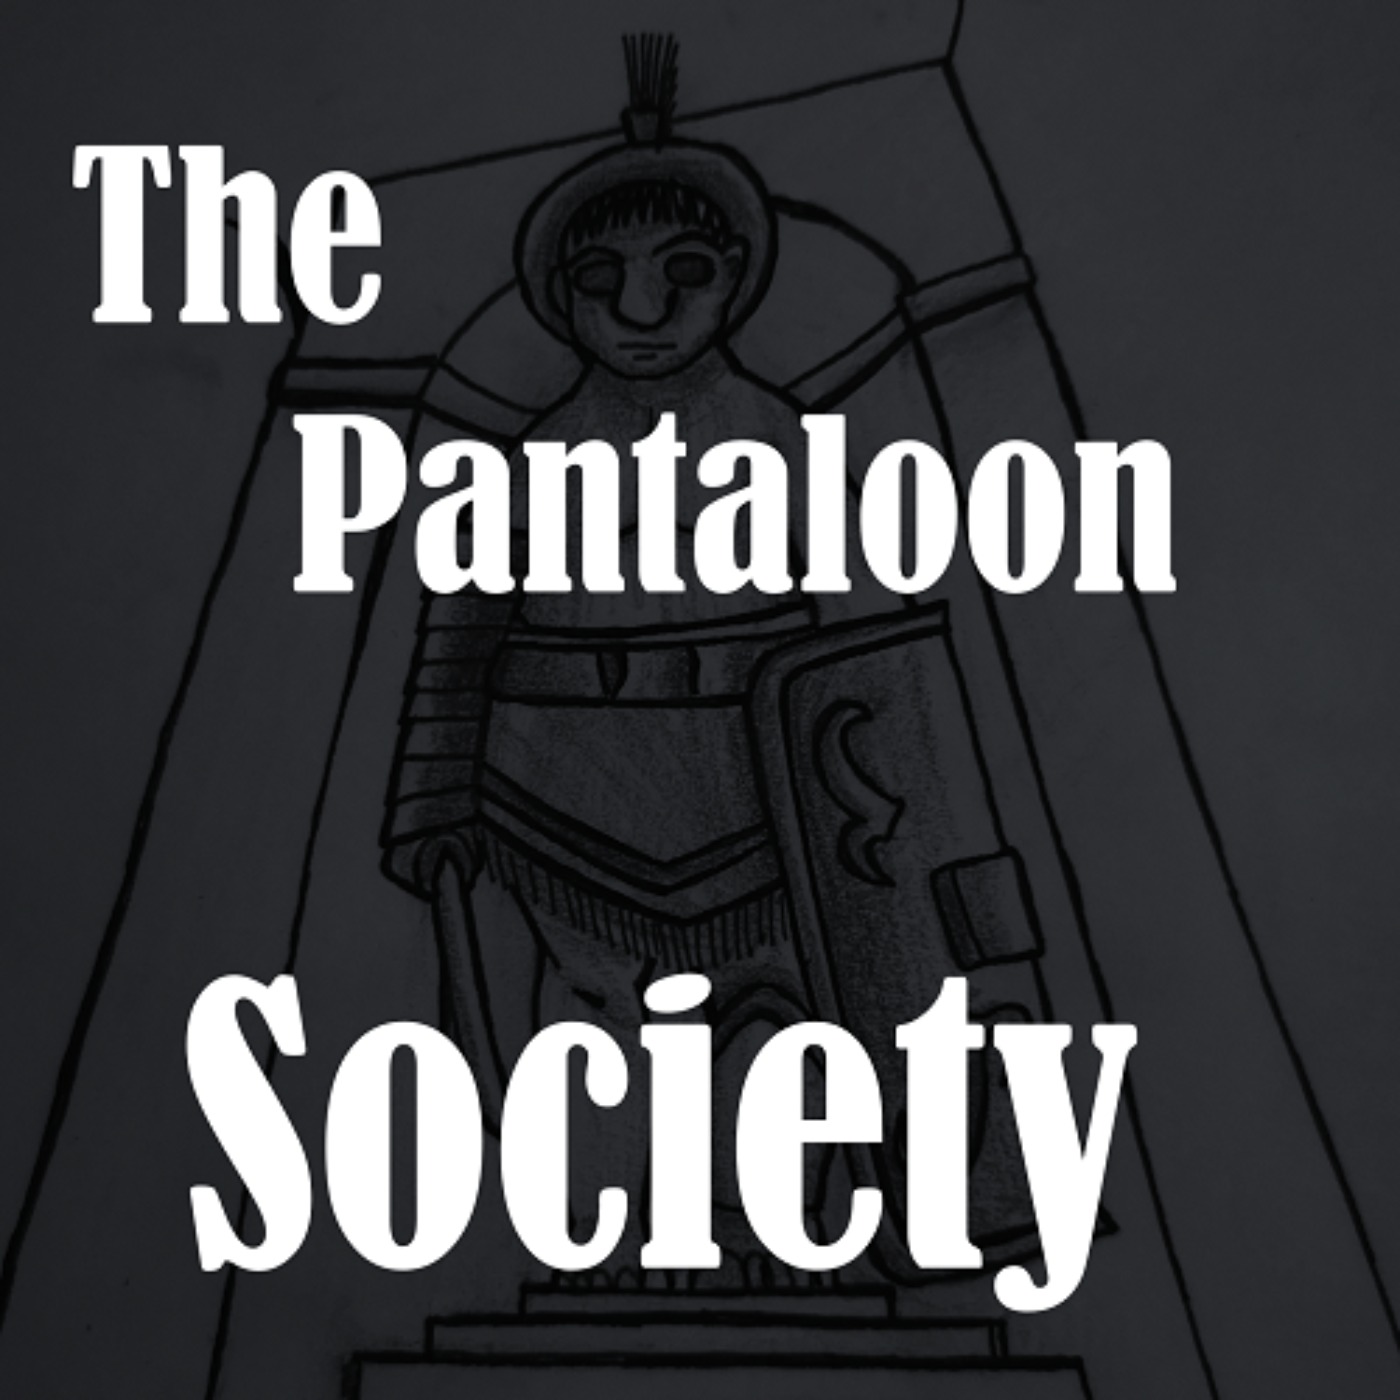 The Pantaloon Society